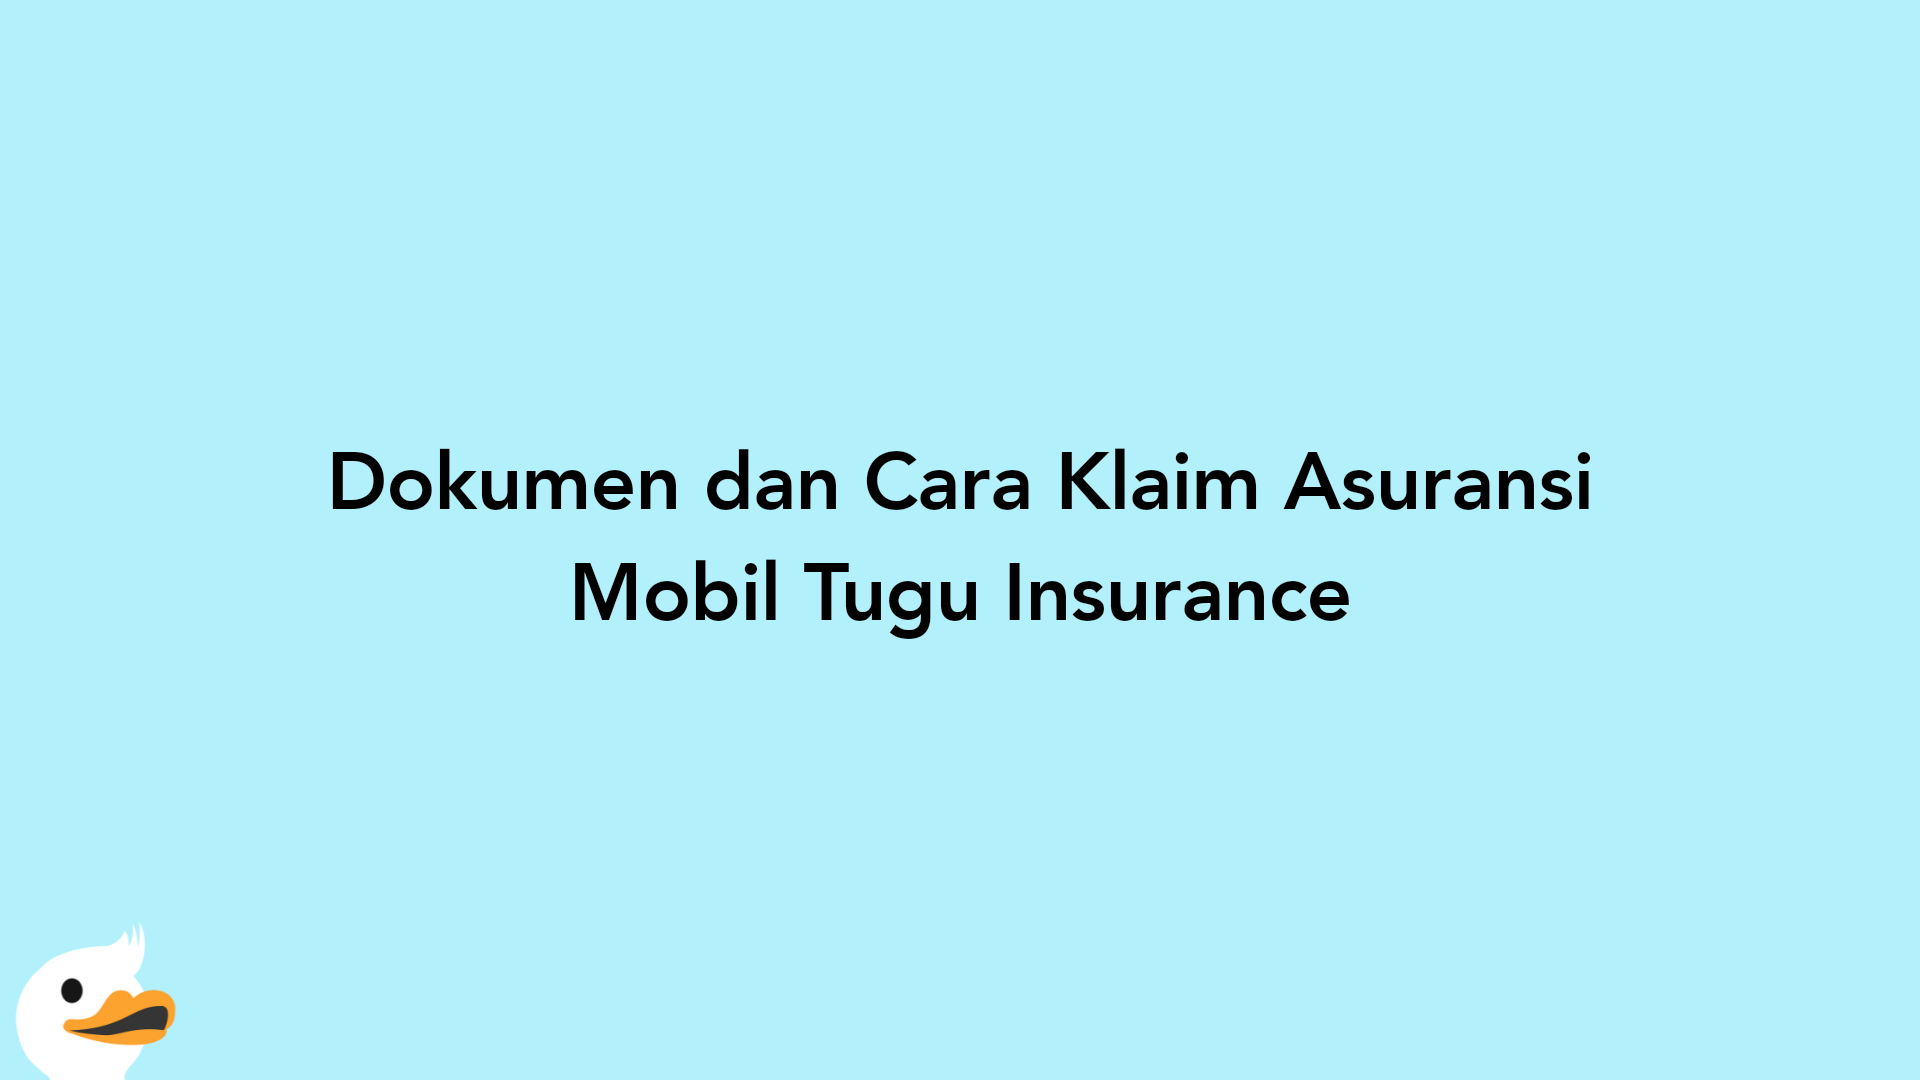 Dokumen dan Cara Klaim Asuransi Mobil Tugu Insurance